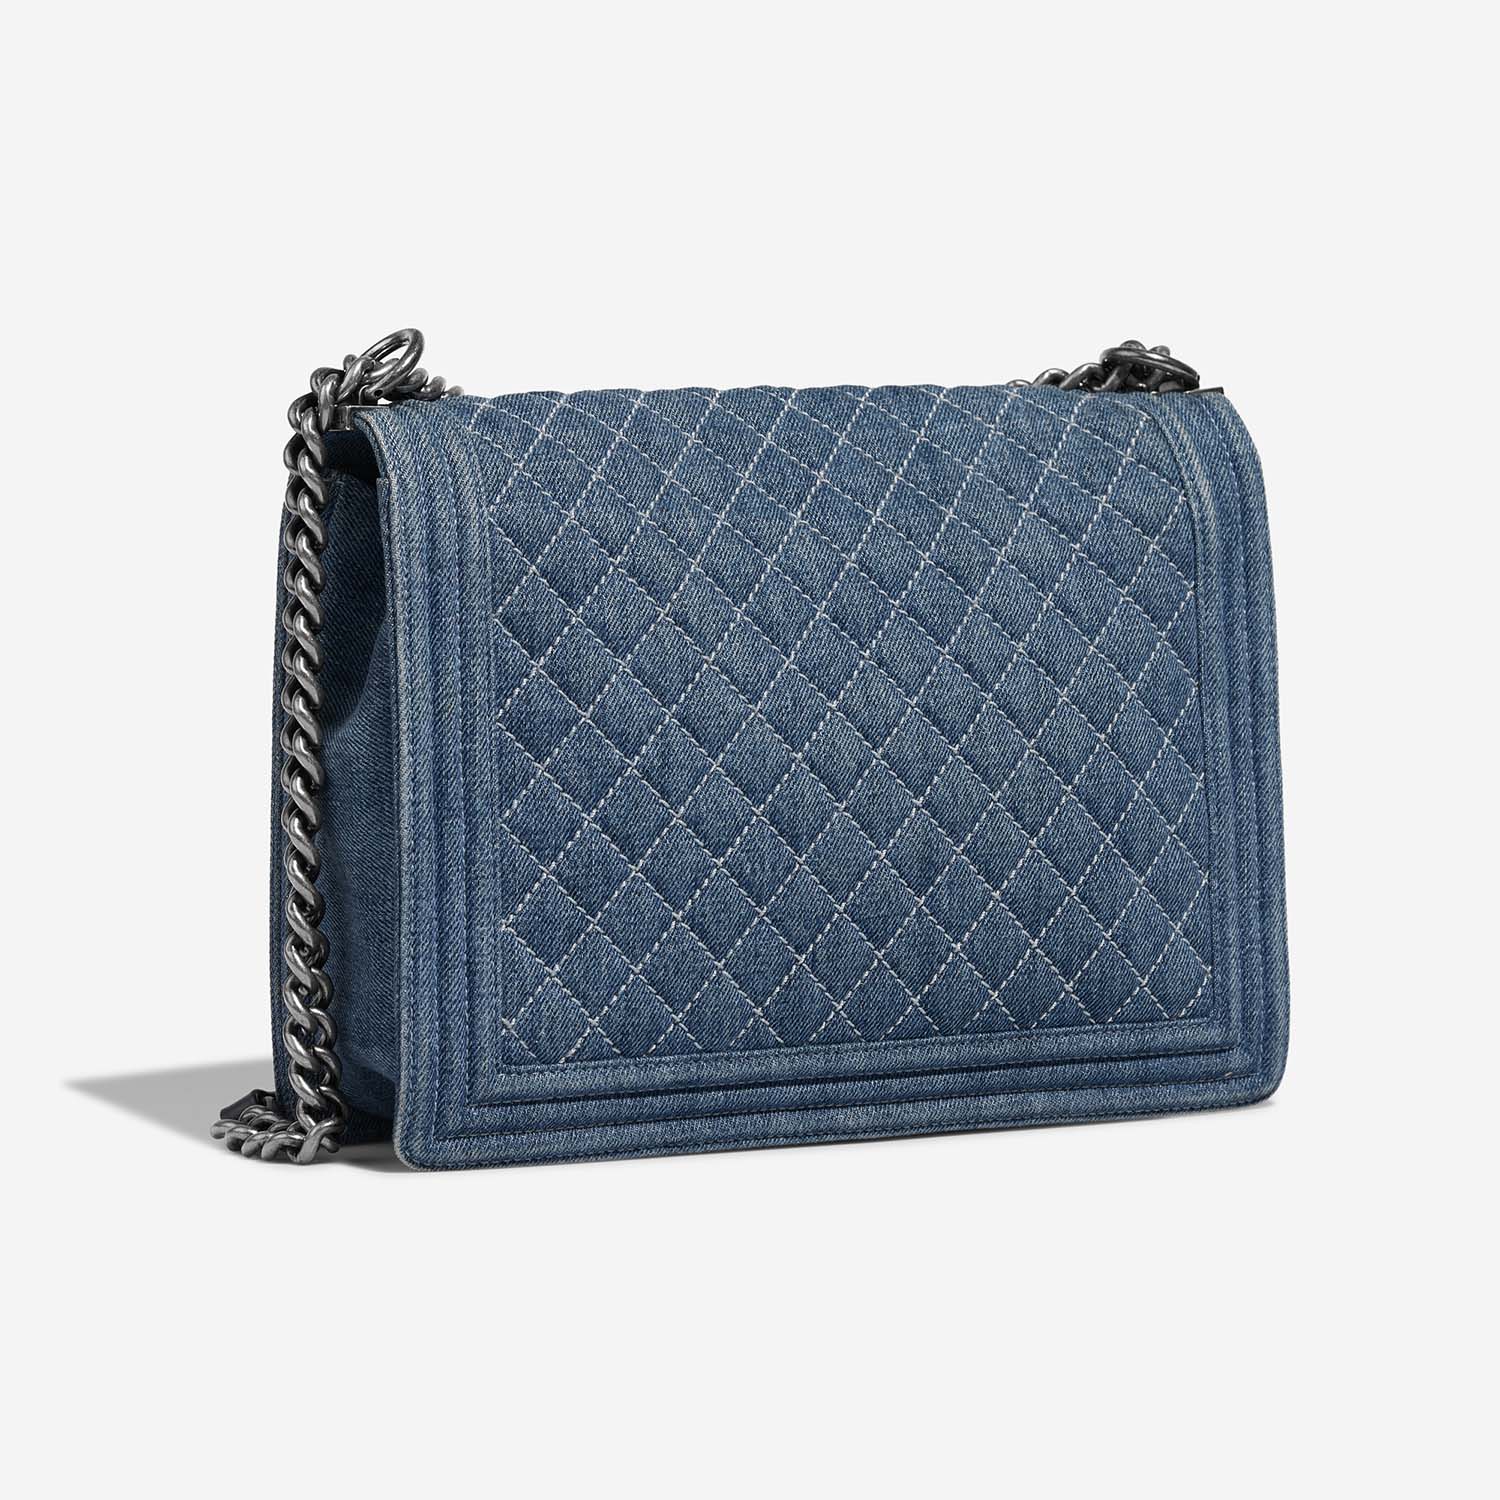 Chanel Boy Large Blue Side Back | Verkaufen Sie Ihre Designer-Tasche auf Saclab.com